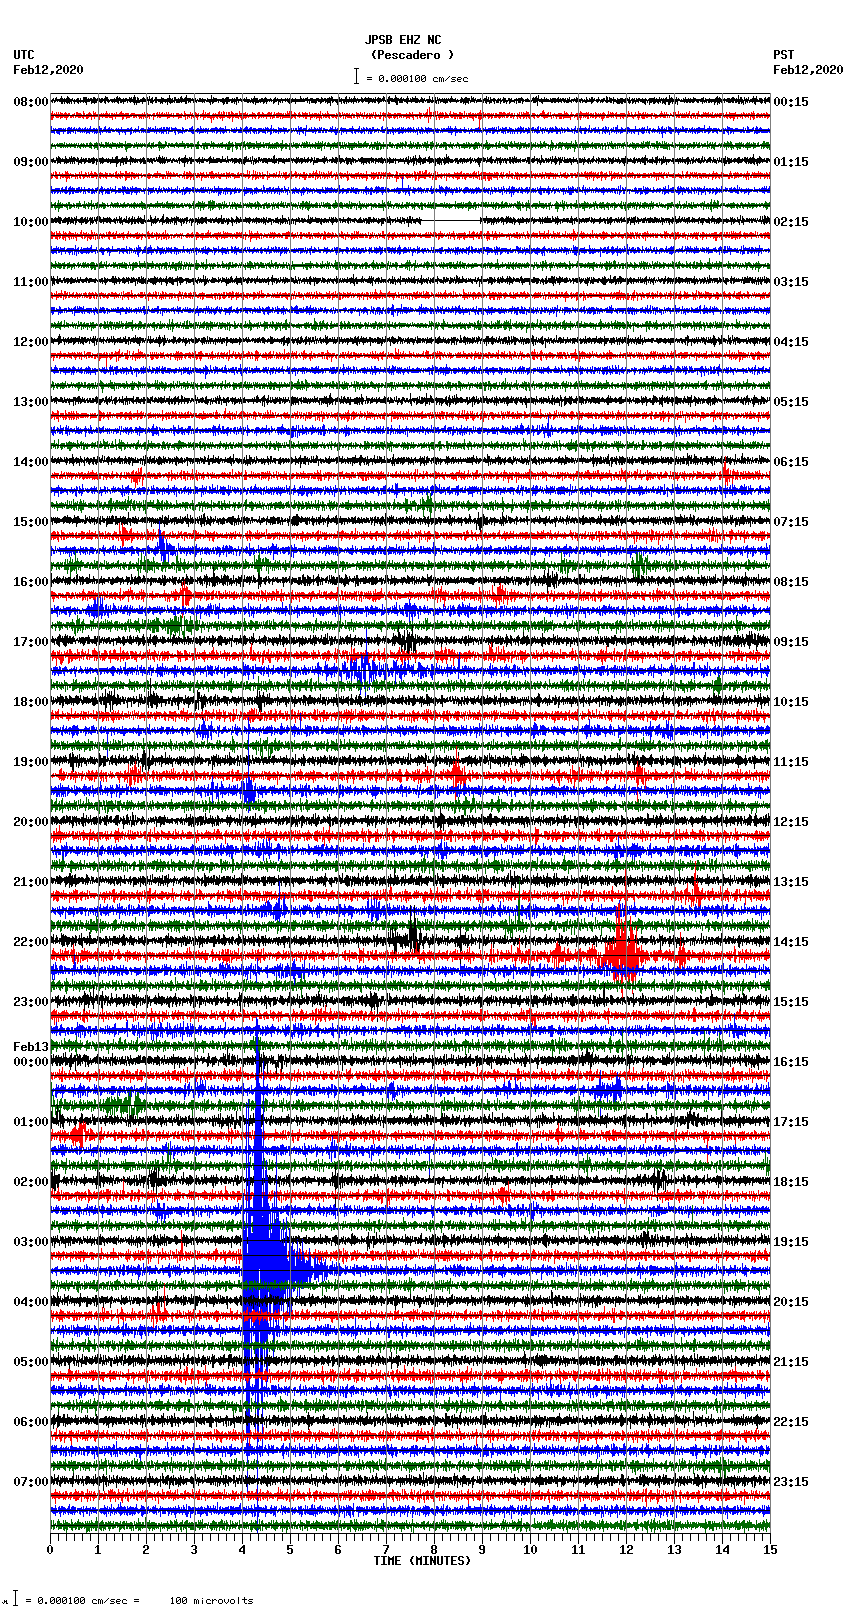 Seismograms | JPSB EHZ NC -- (Pescadero) - Wed Feb 12, 2020